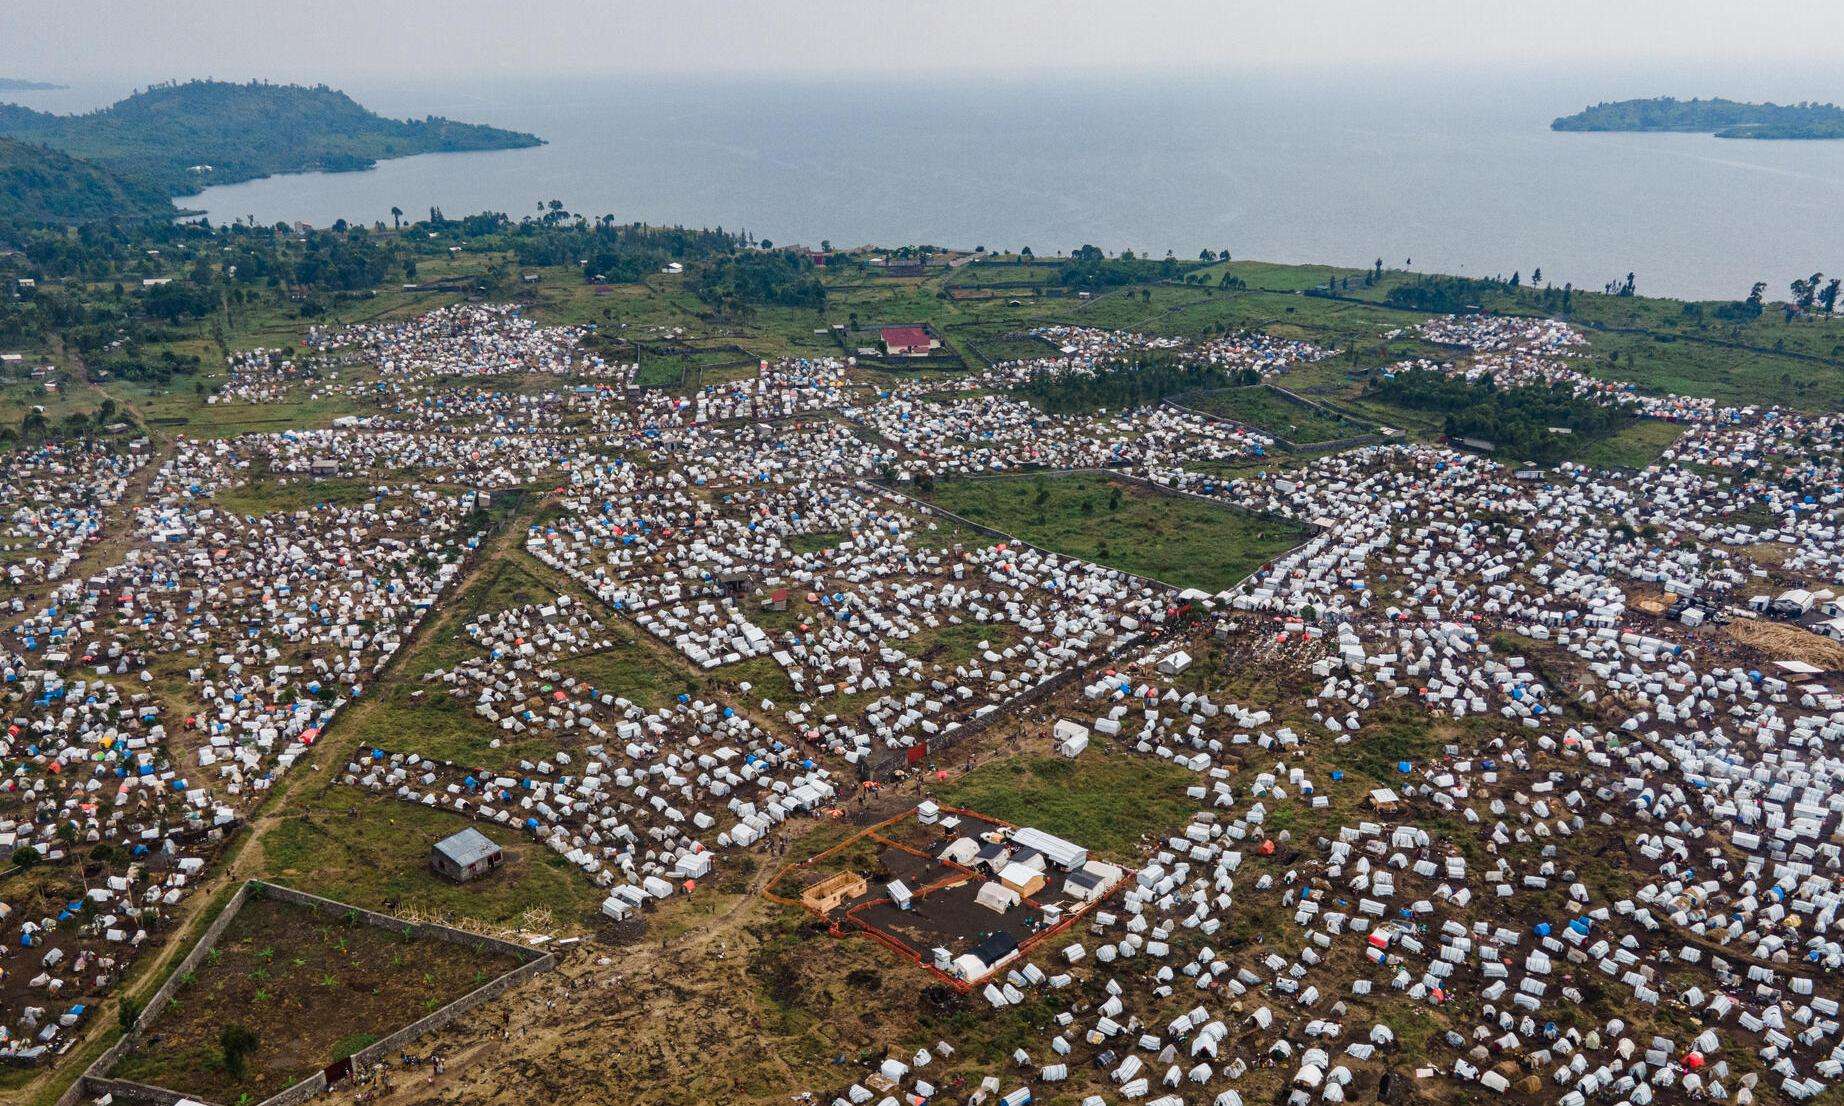 Aerial view of the Bulengo IDP site near Goma, Democratic Republic of Congo